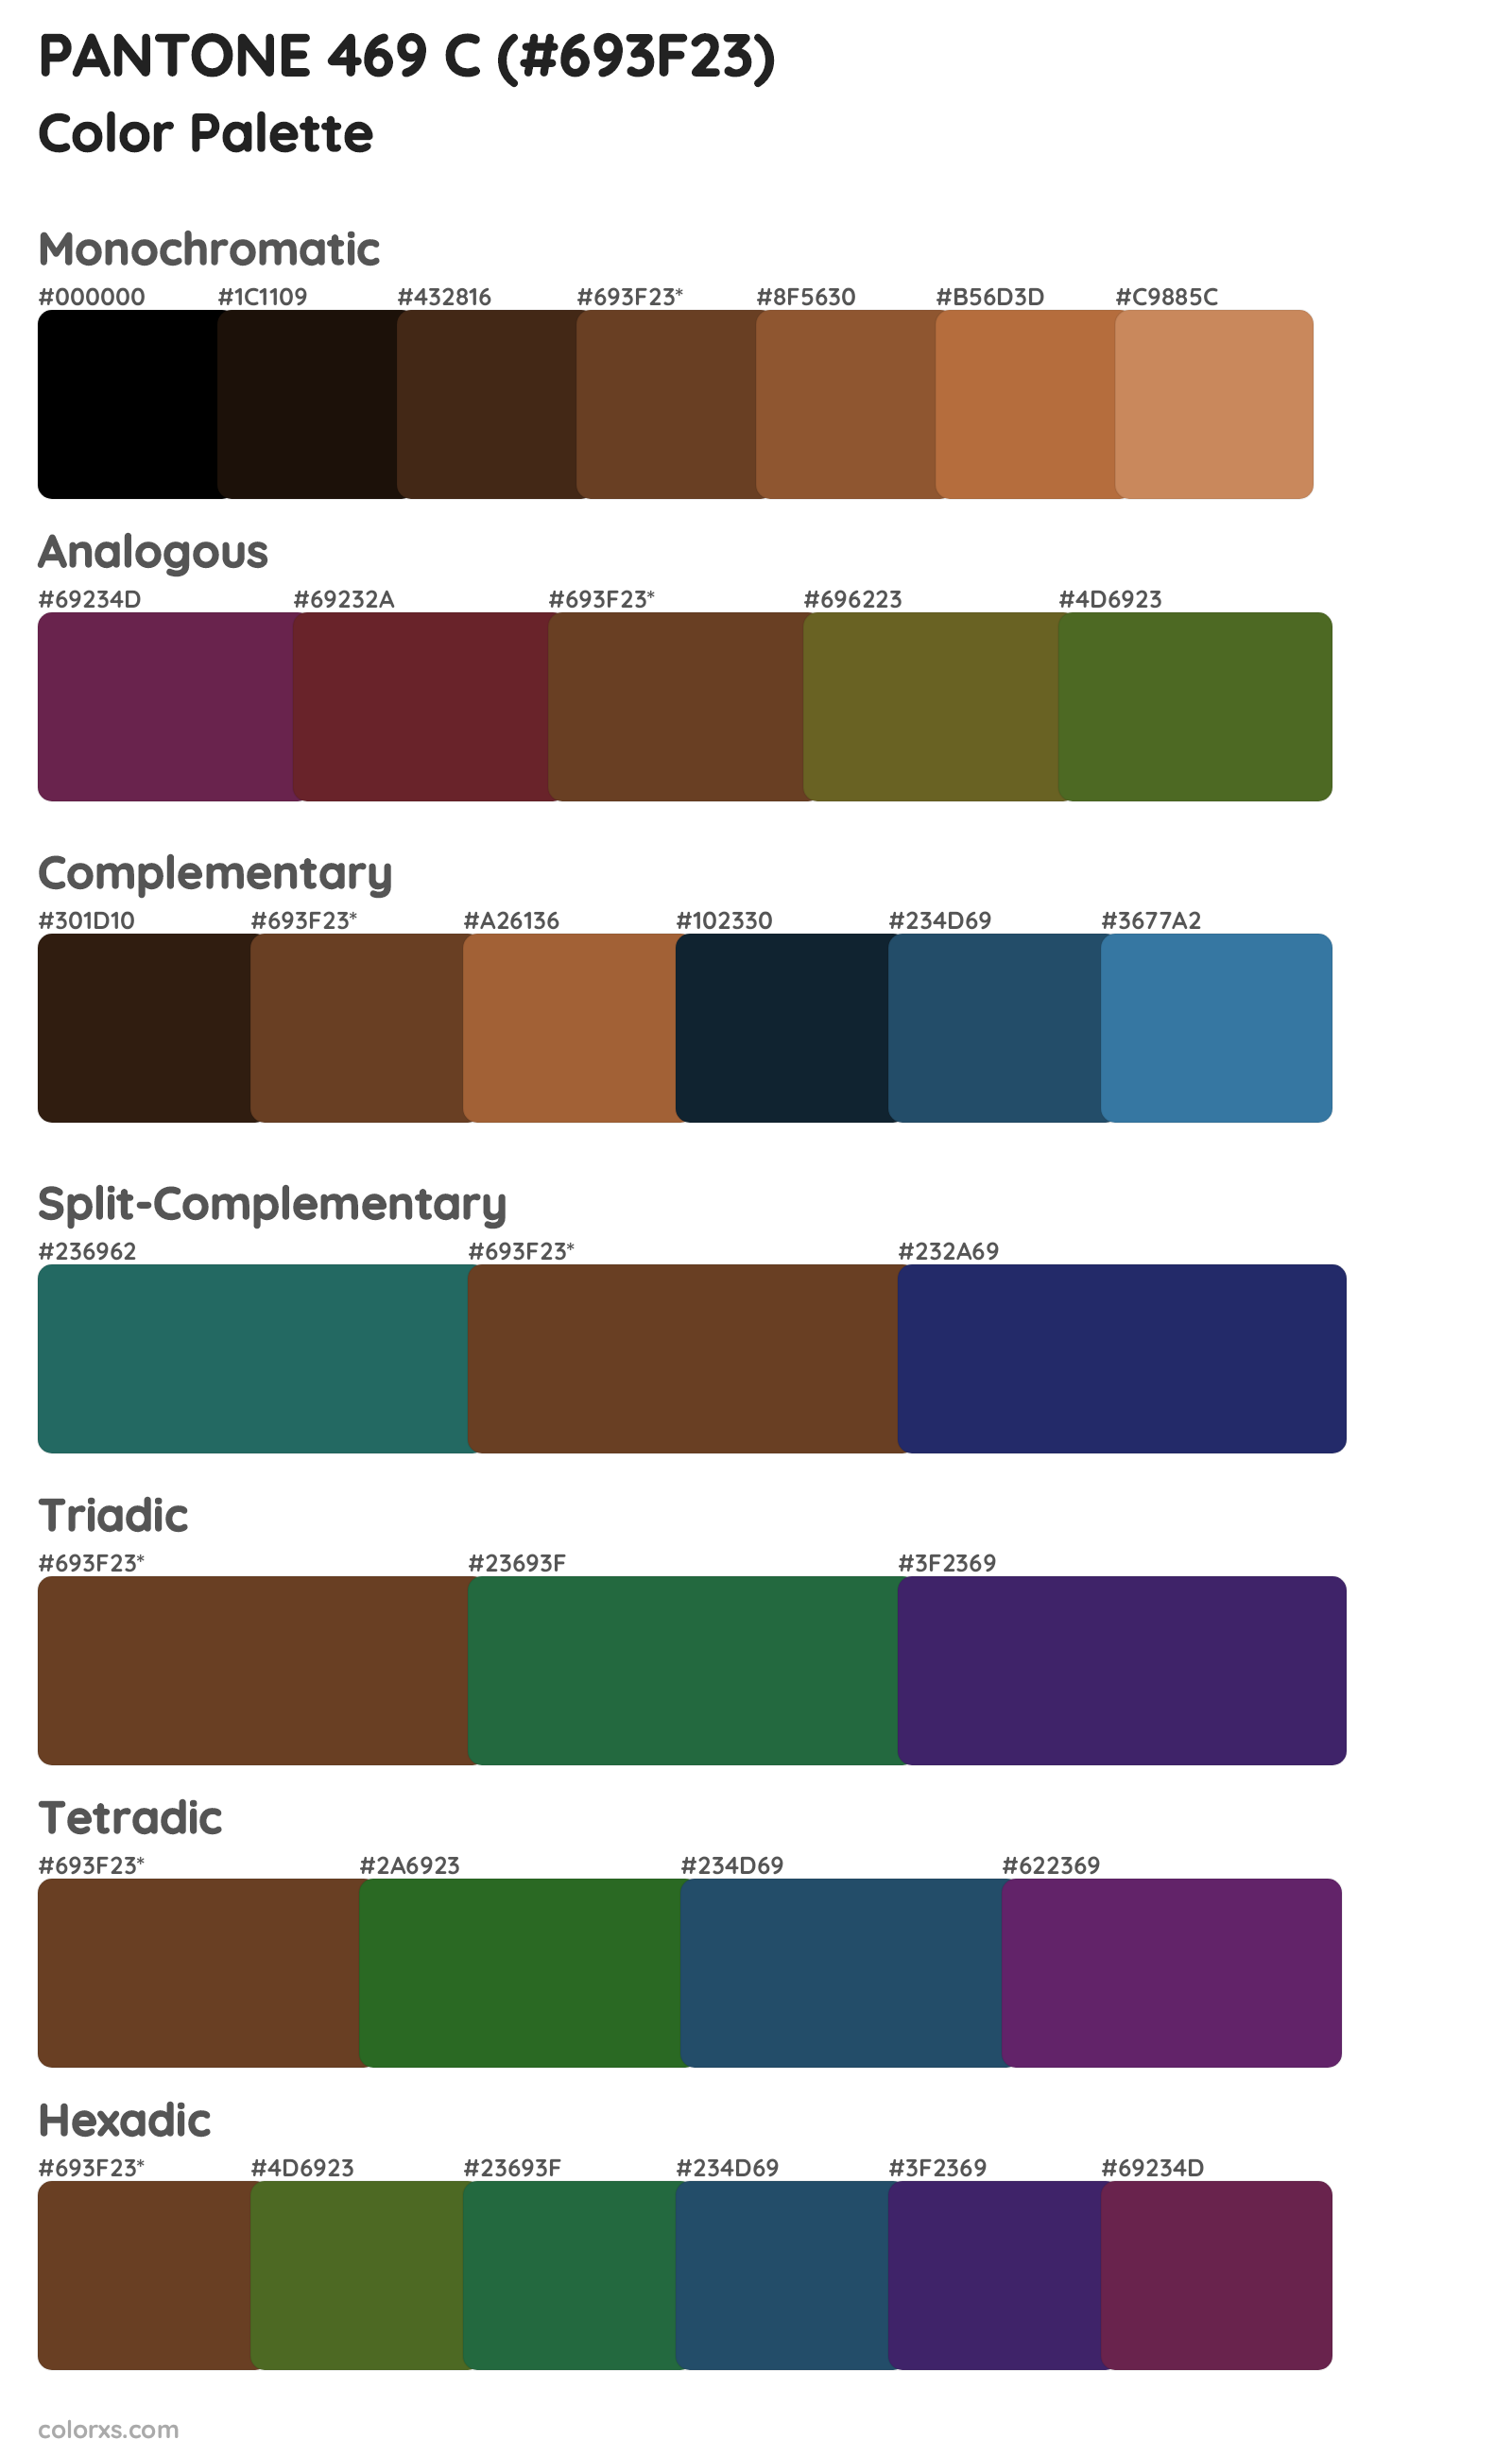 PANTONE 469 C Color Scheme Palettes